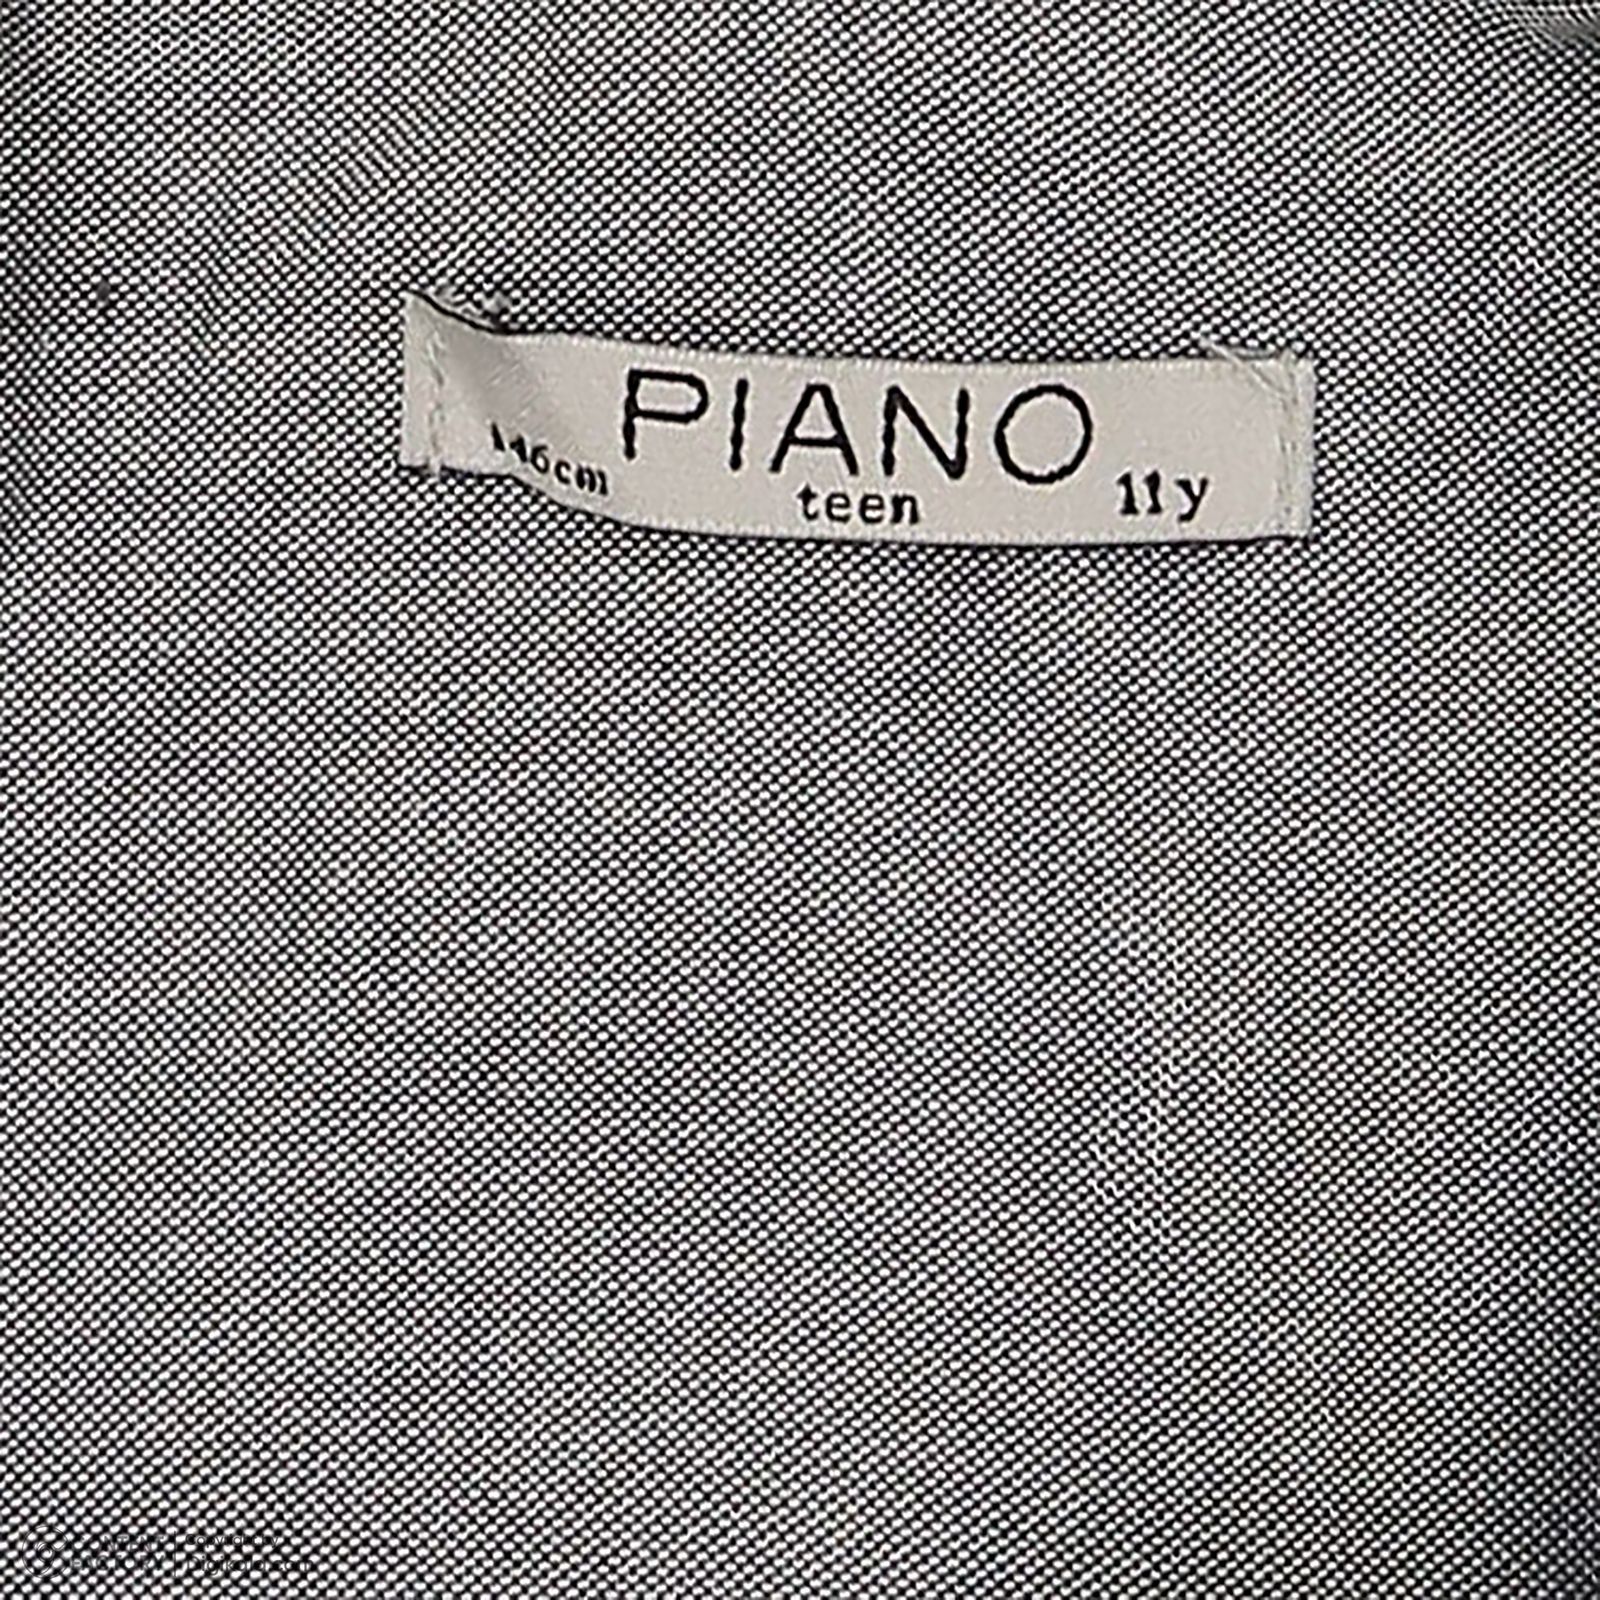 پیراهن آستین بلند پسرانه پیانو مدل 8554-1 -  - 5